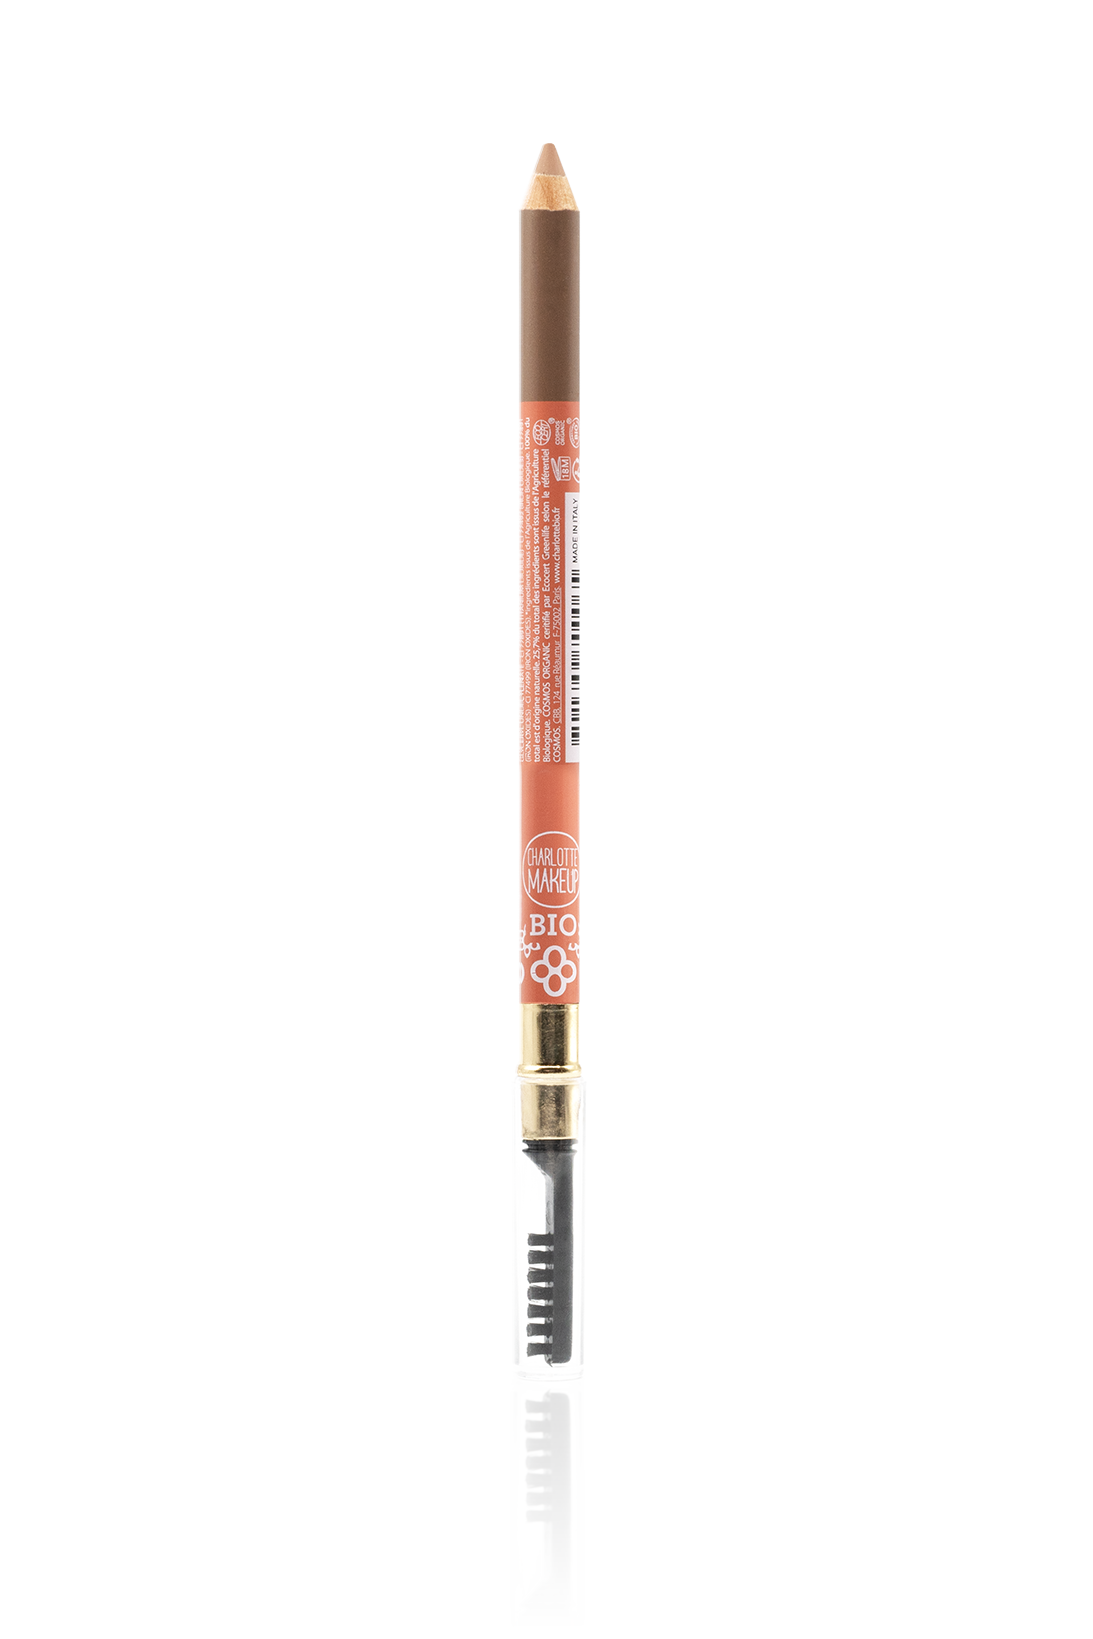 Blonde eyebrow pencil